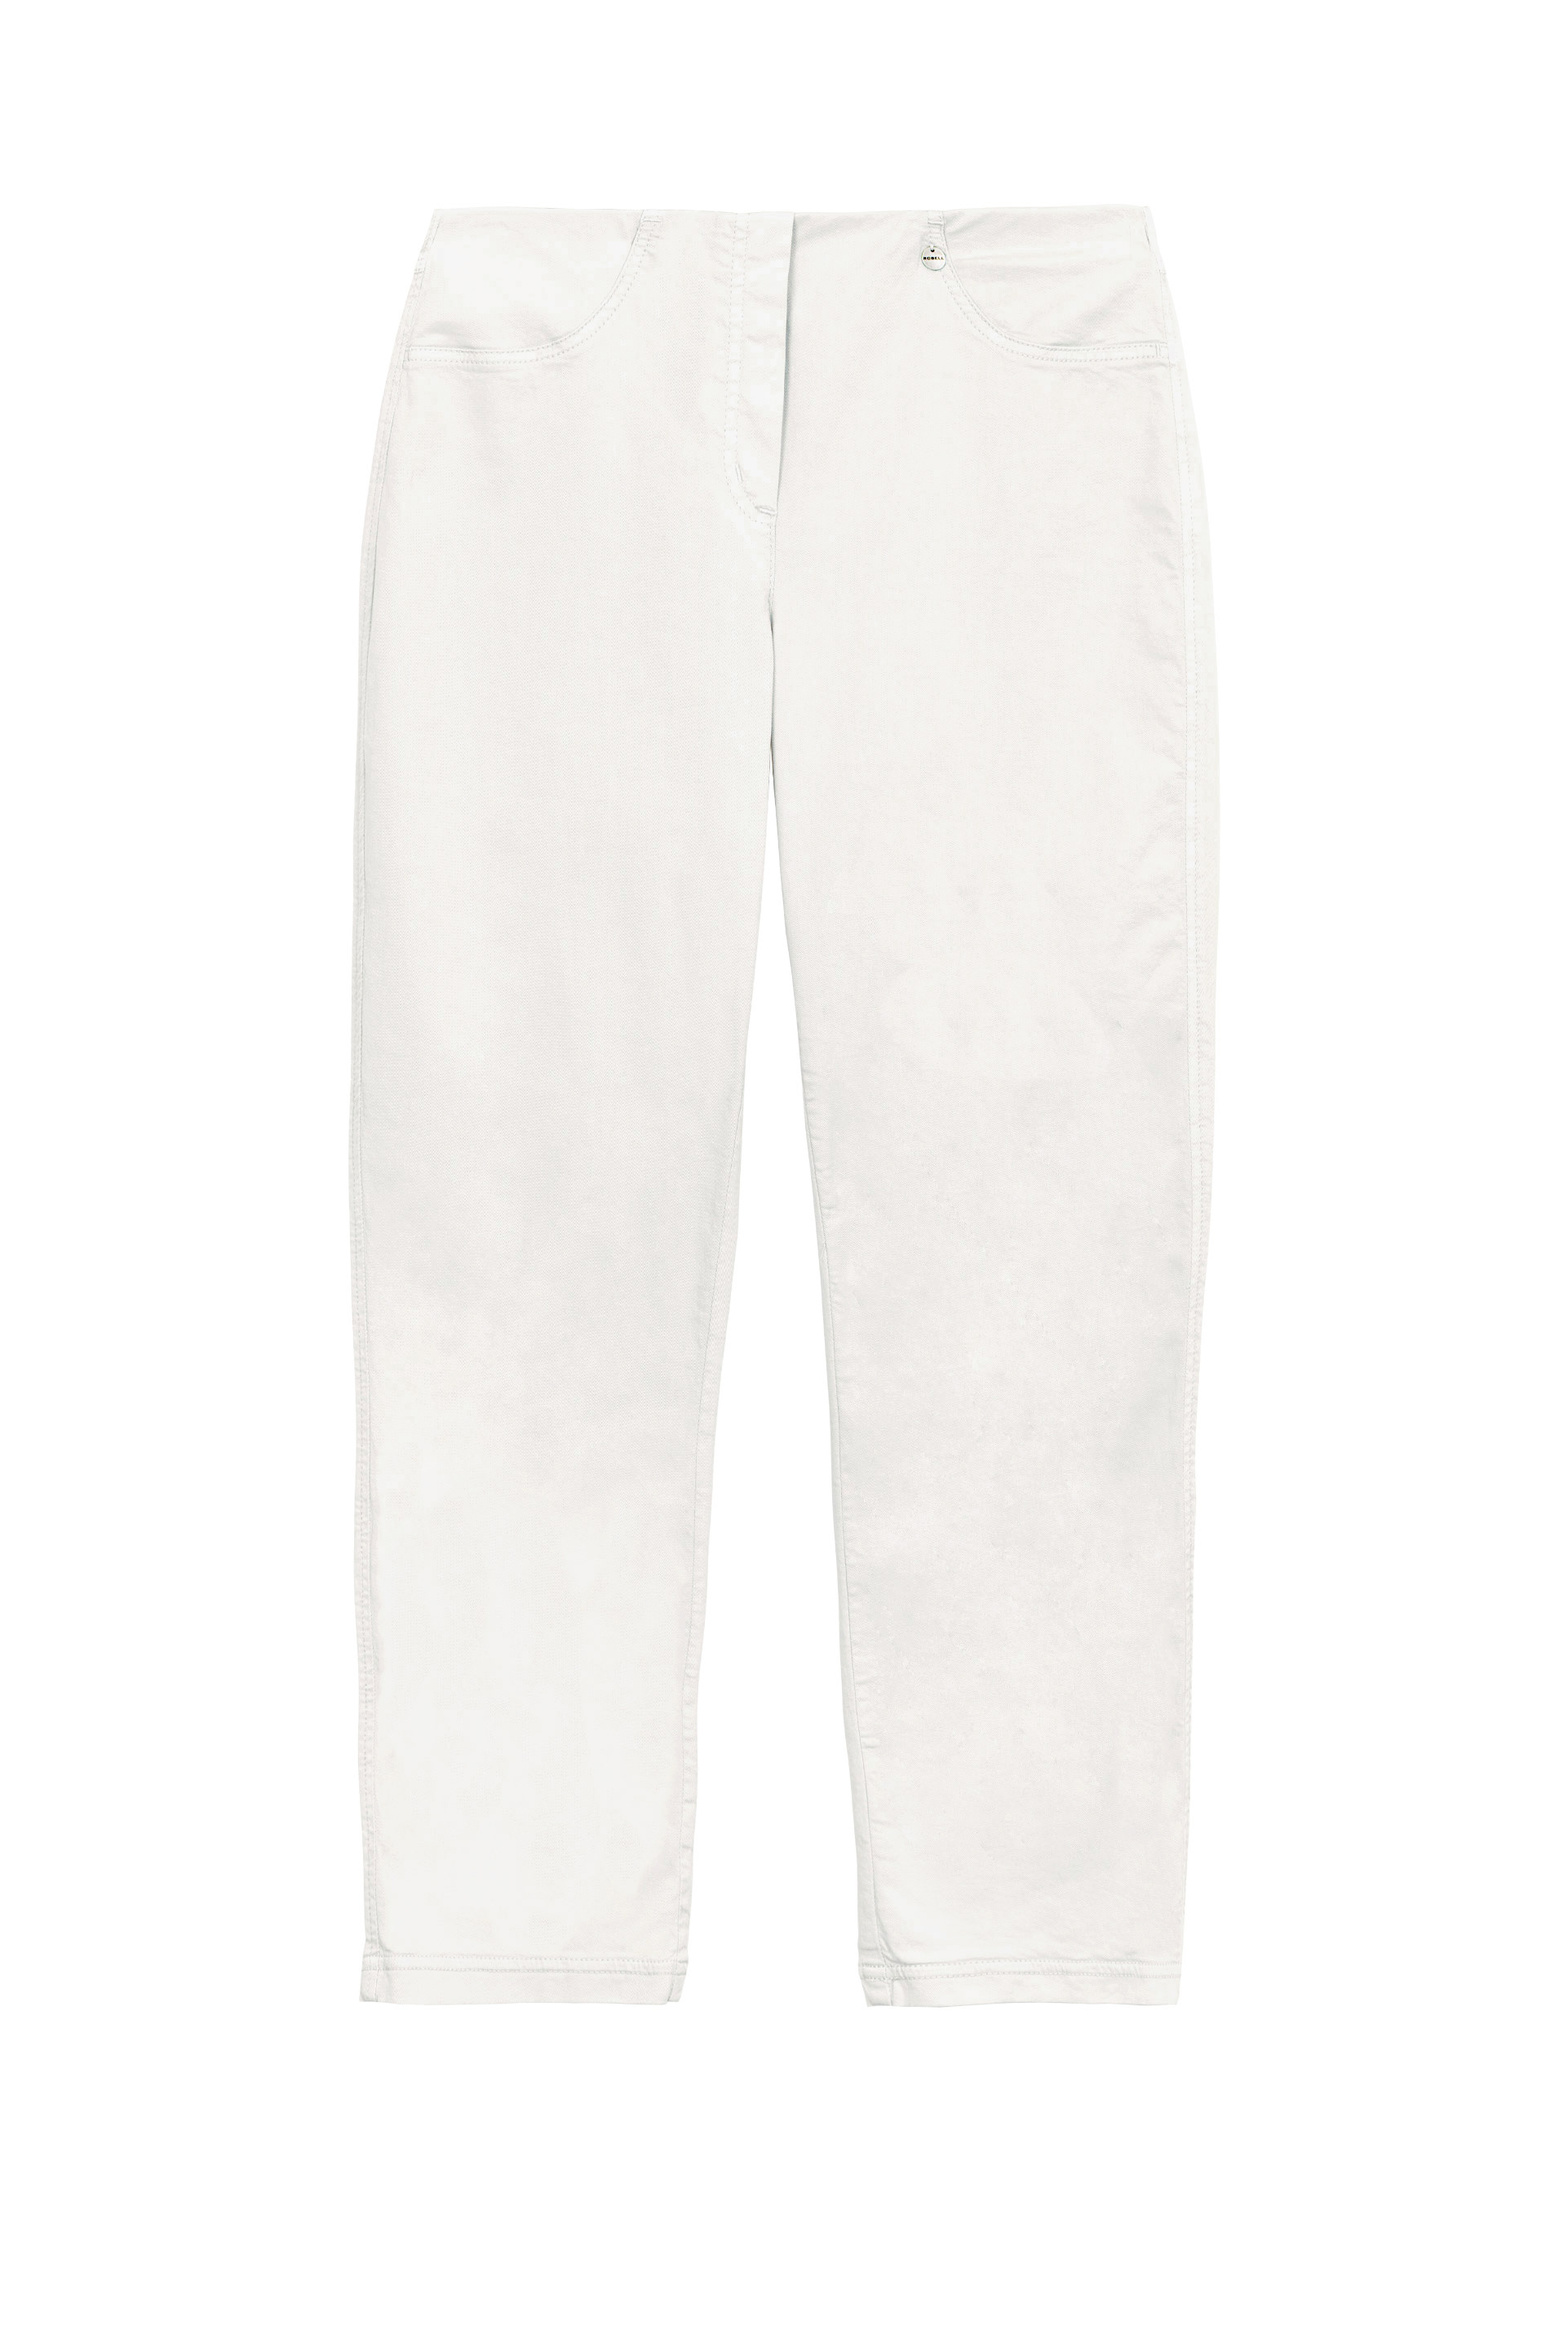 68607_cotton_bella_trousers_snow_white_b.jpg